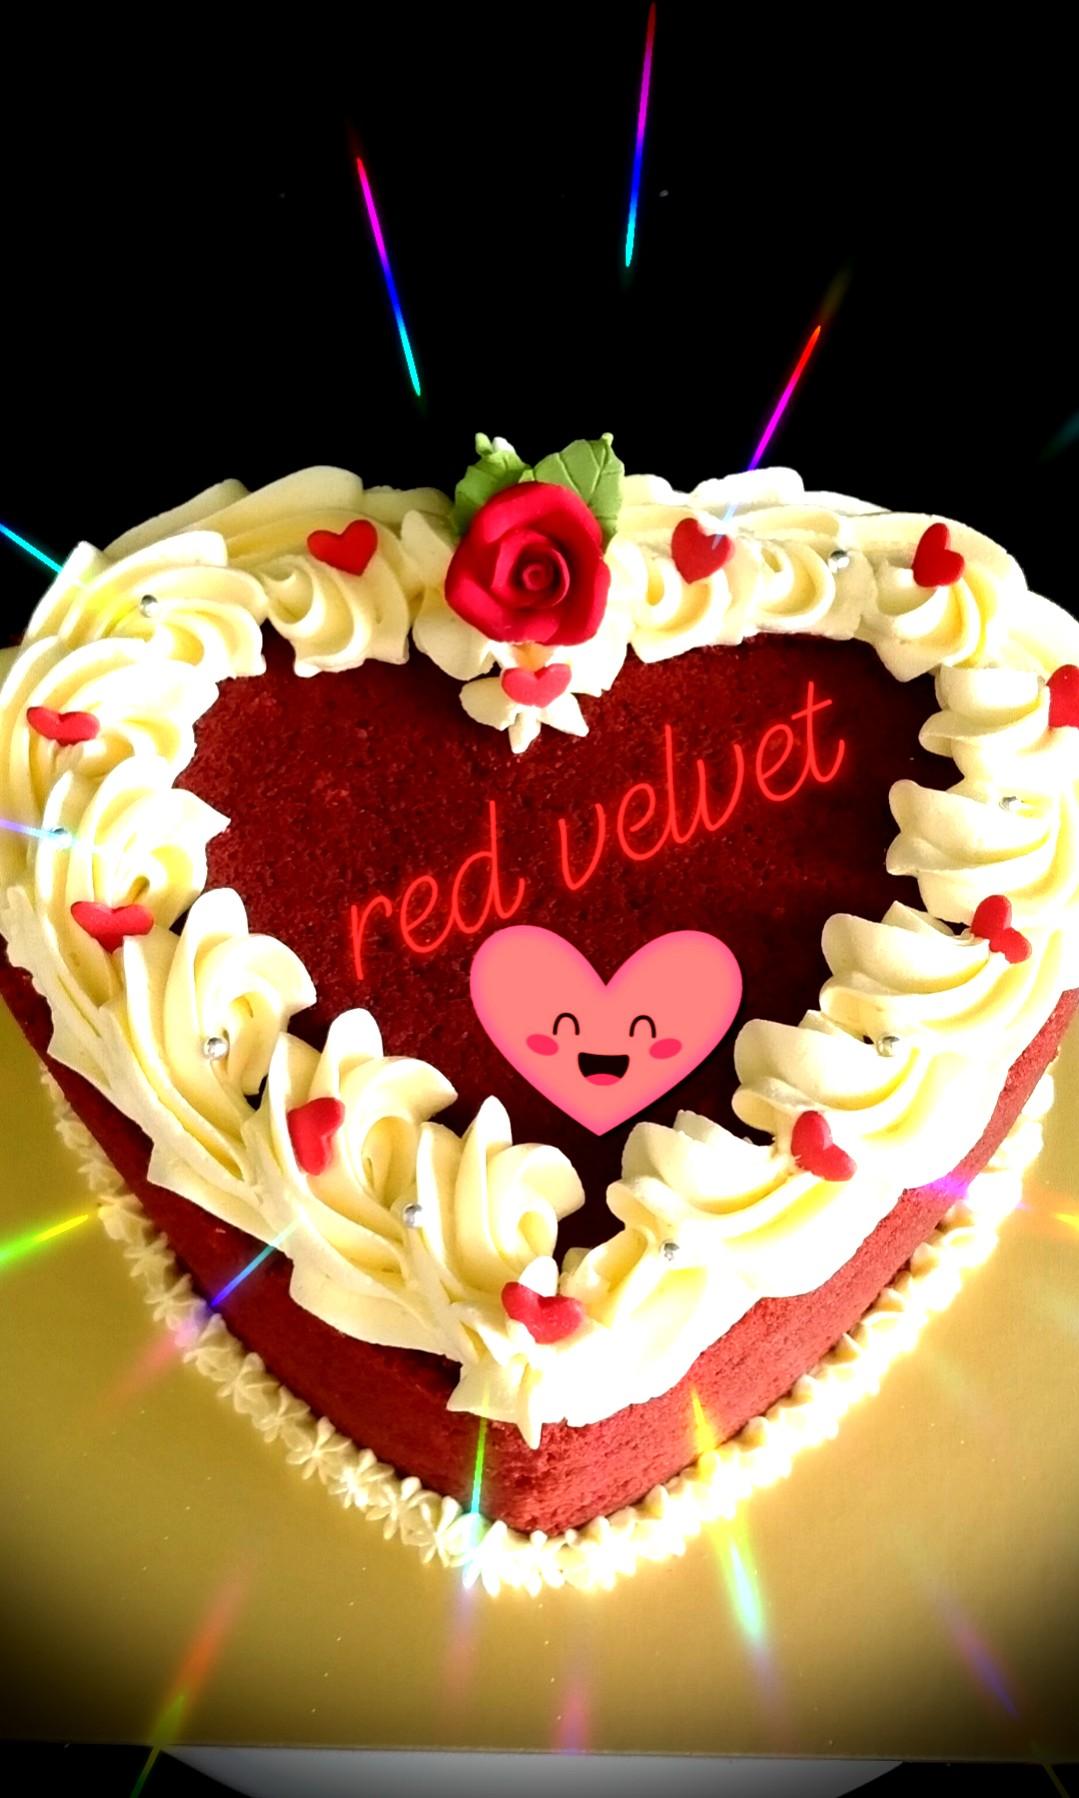 Red Velvet Cake Love - The Cake Town